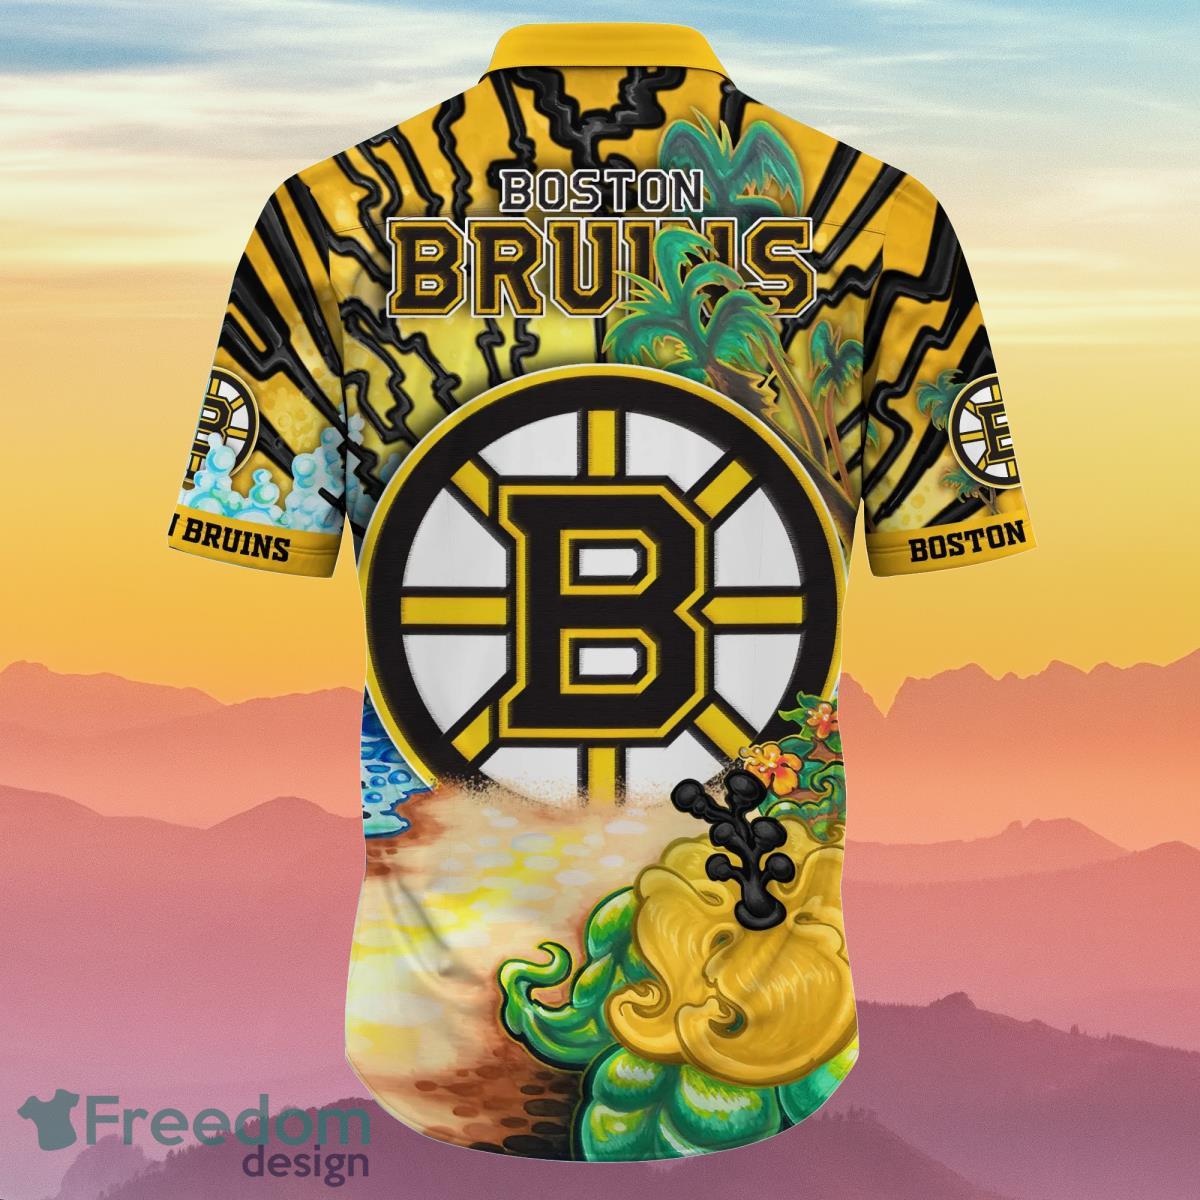 Boston Bruins Jerseys, Bruins Hockey Jerseys, Authentic Bruins